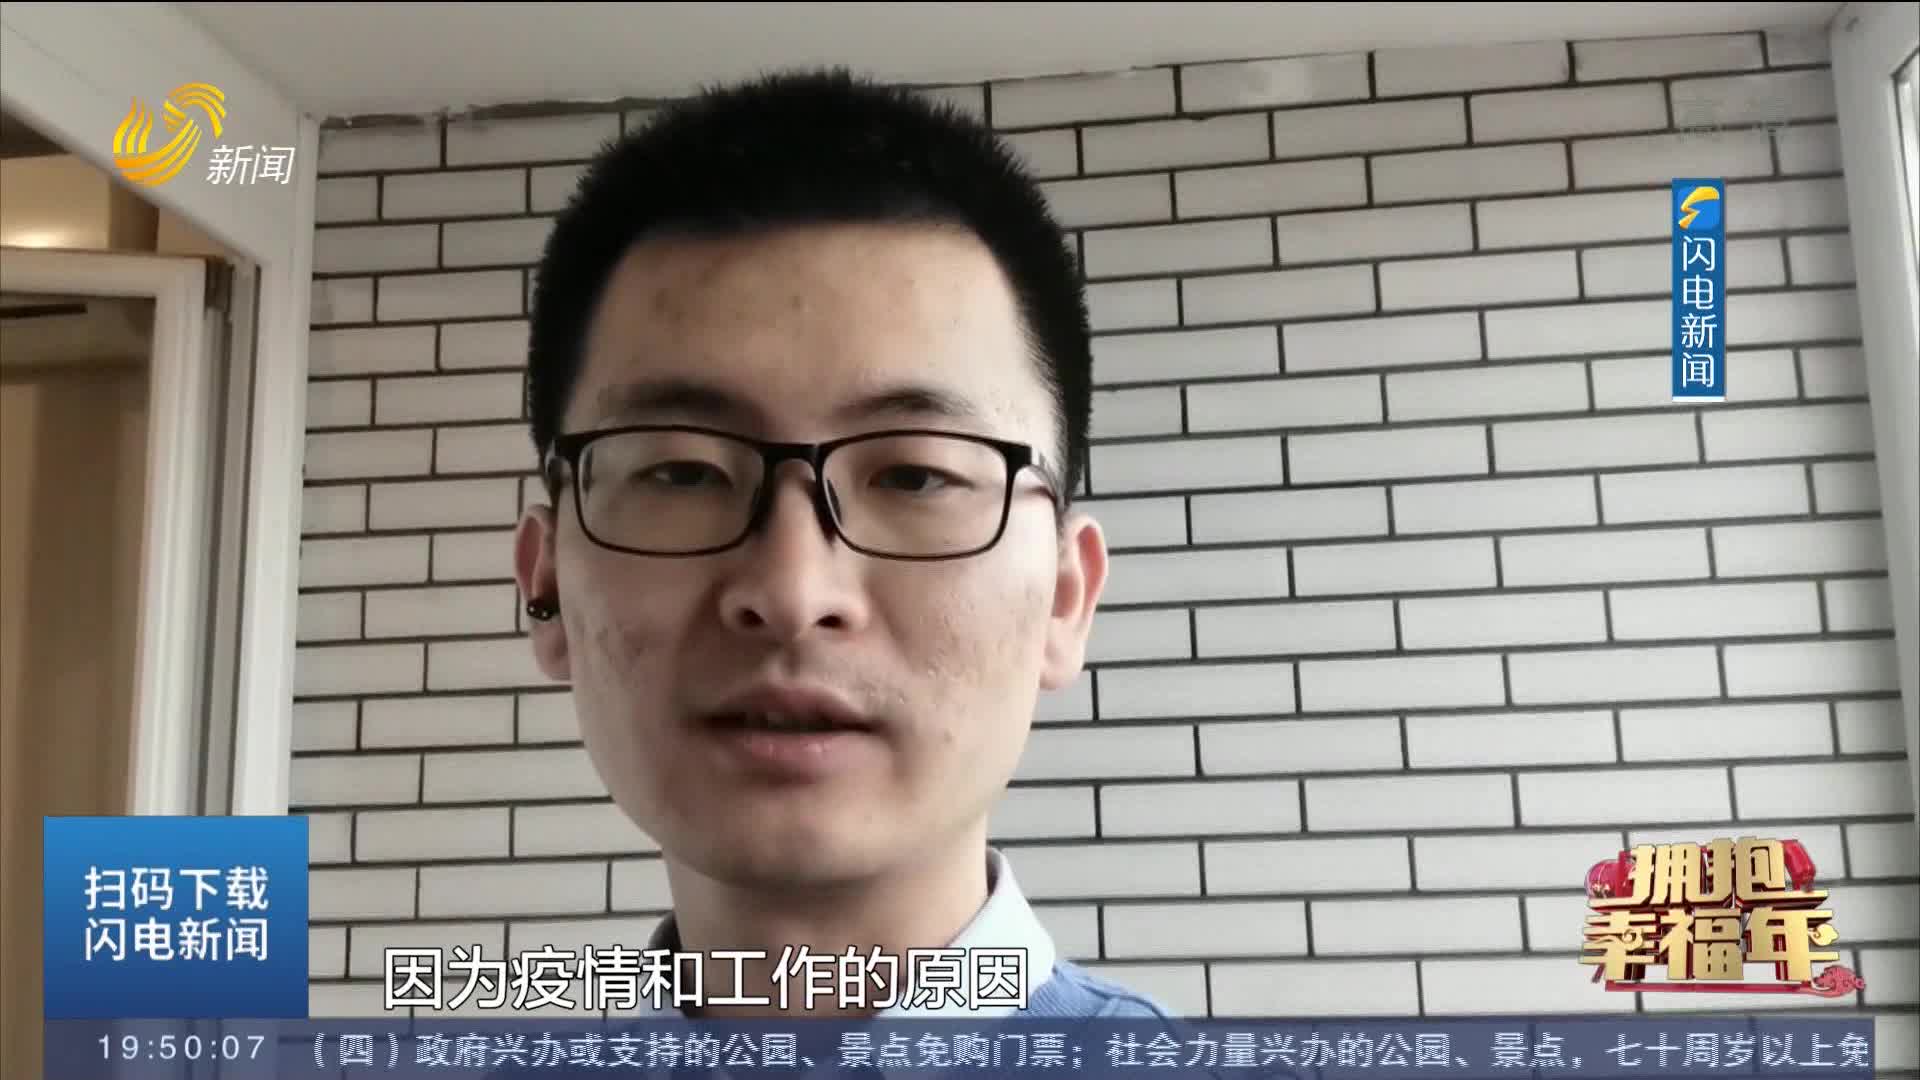 【拥抱幸福年】闪电新闻全球拍客刘龙：特别感谢祖国的强大 作为中国人感到自豪